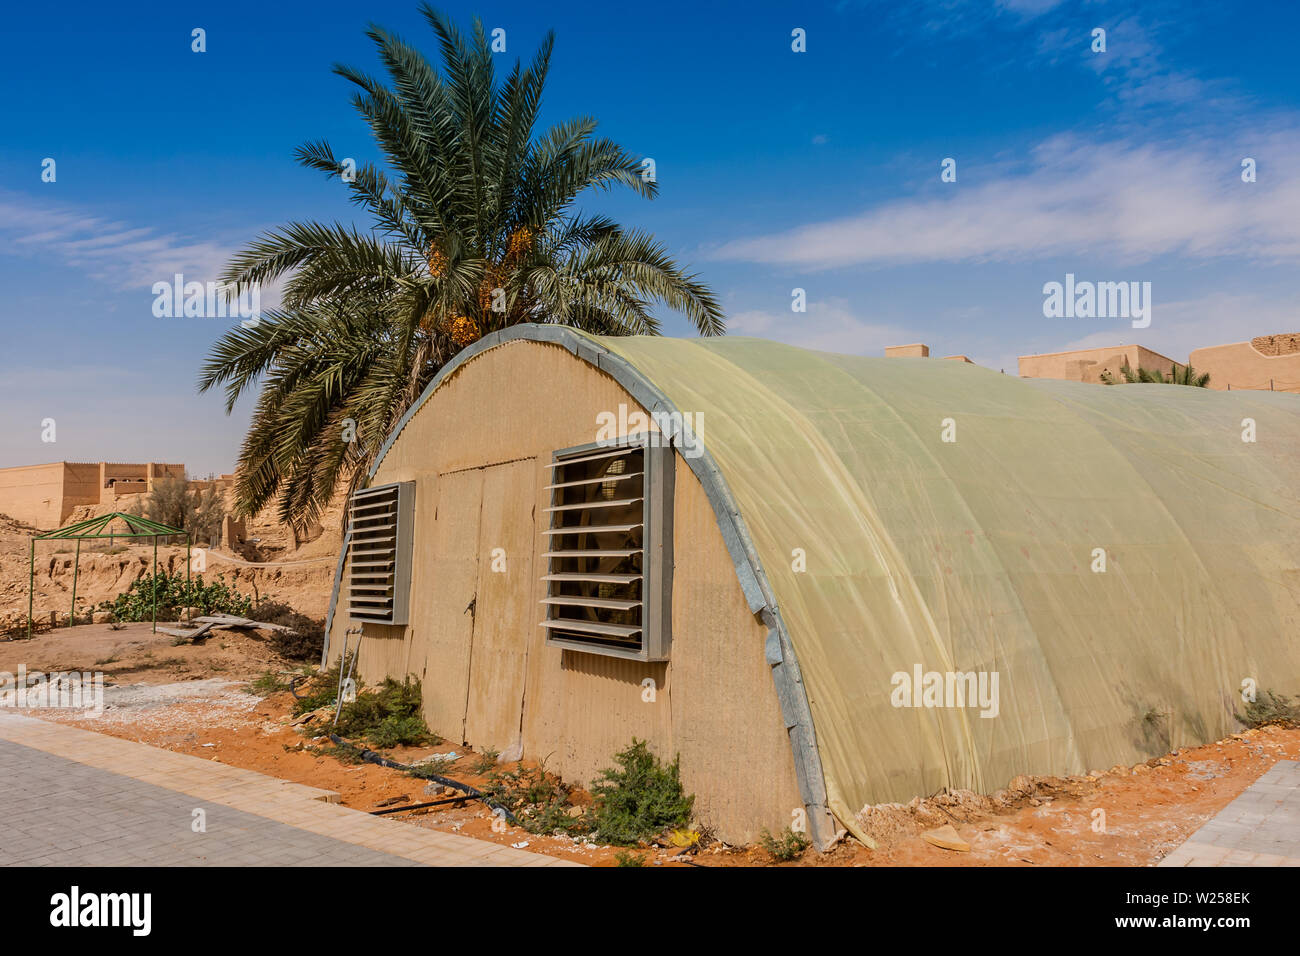 El invernadero de la granja orgánica en Wadi Hanifa cerca de la ciudad histórica de Ad Diriyah, Riad Foto de stock